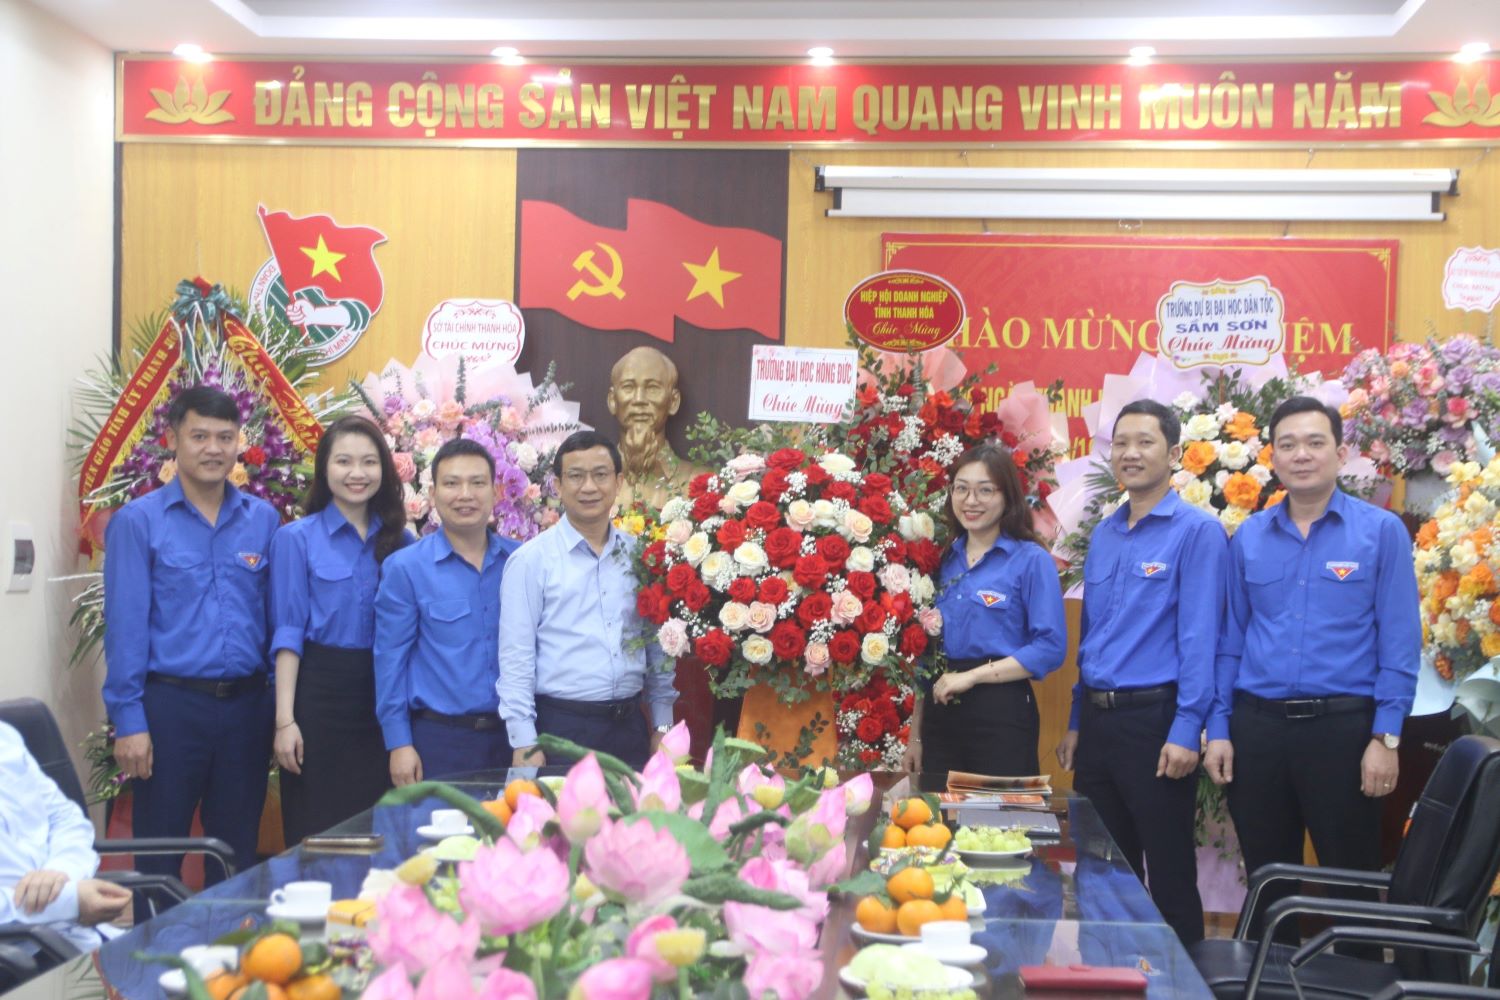 Lãnh đạo Trường Đại học Hồng Đức tặng hoa chúc mừng Đoàn TNCS Hồ Chí Minh tỉnh Thanh Hoá nhân kỷ niệm 93 năm Ngày thành lập đoàn TNCS Hồ Chí Minh.